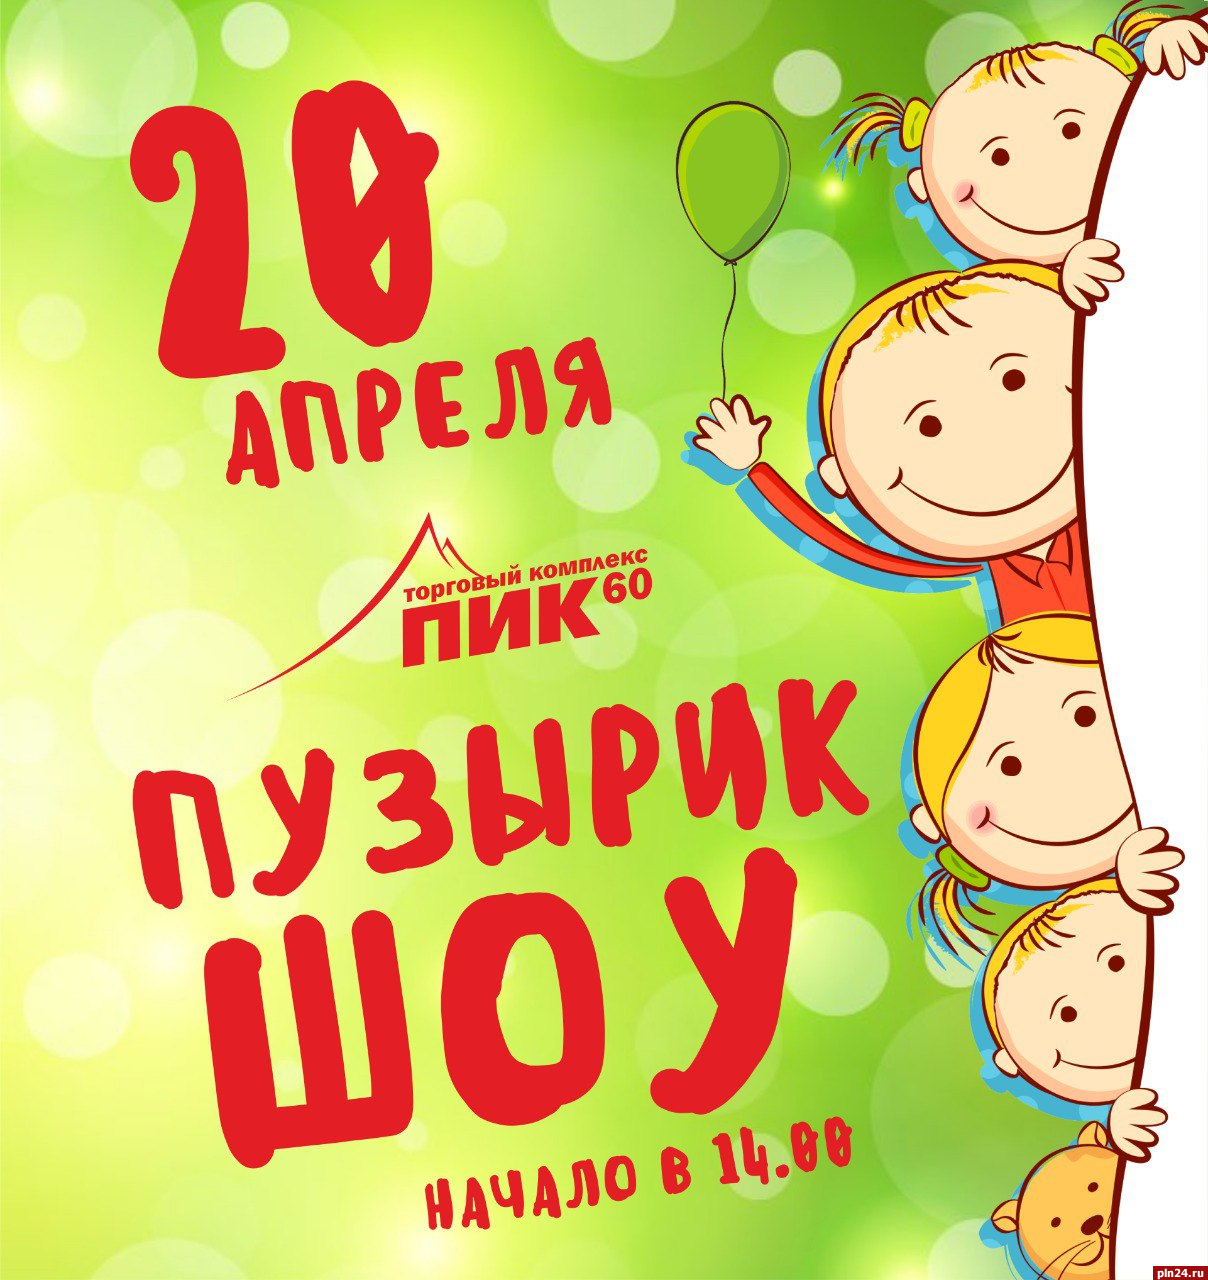 Мыльные пузыри, танцы и конкурсы: семейный праздник пройдет в Пскове